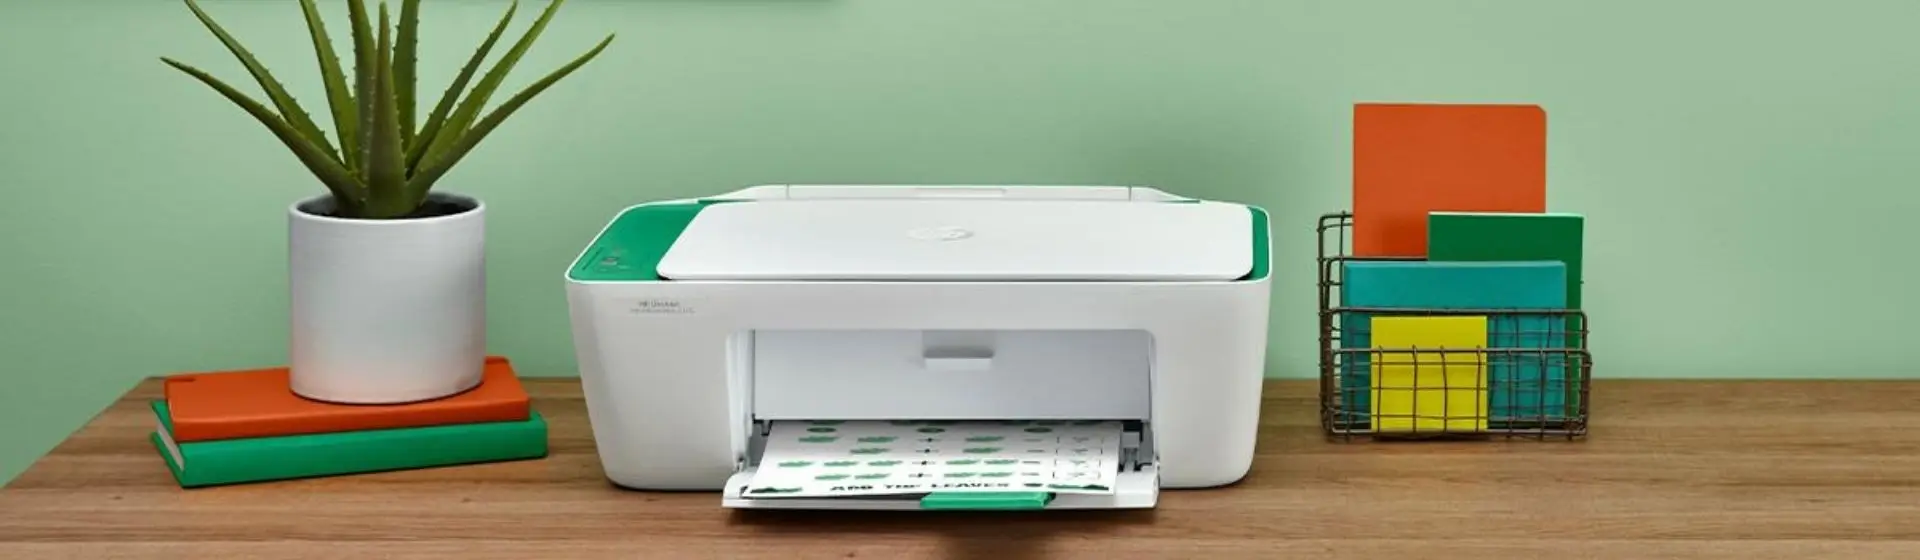 Como configurar impressora HP? Aprenda no passo a passo